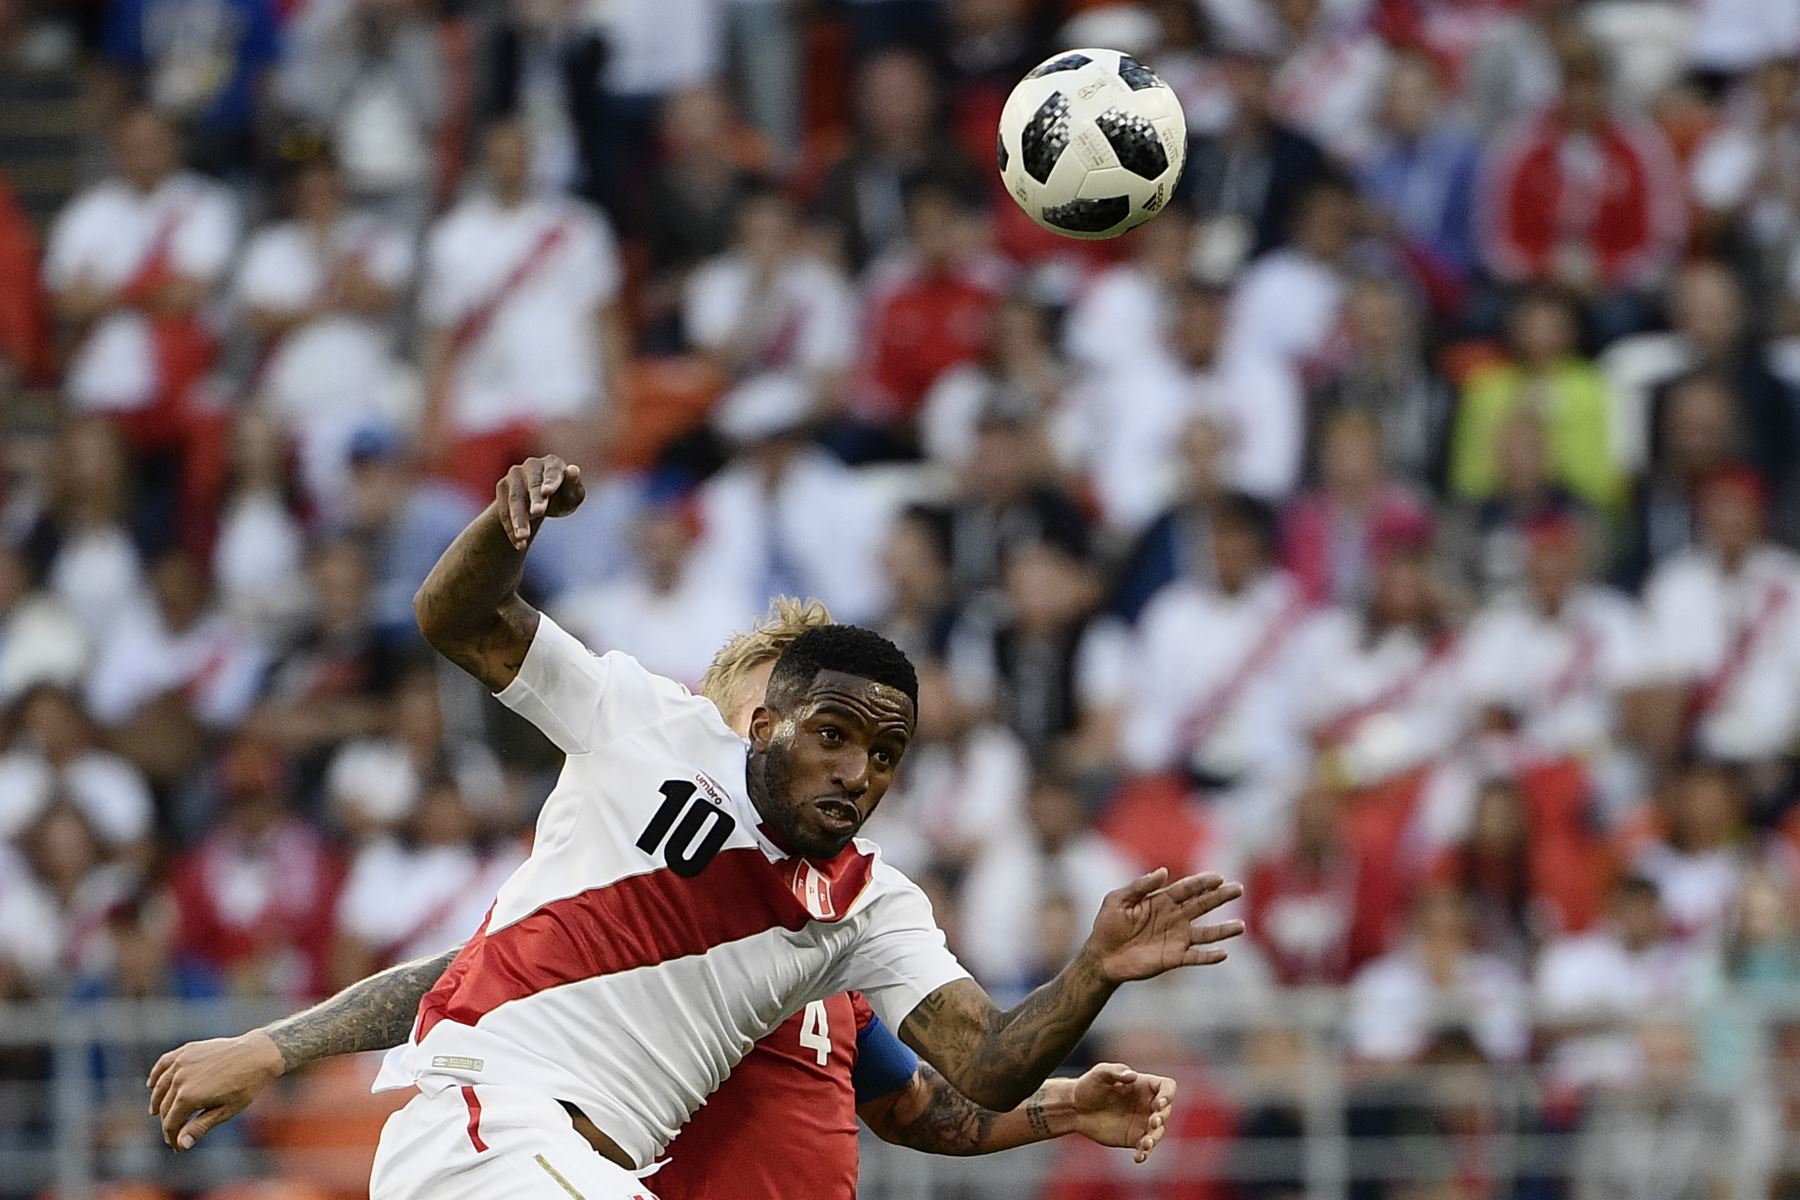 El delantero peruano Jefferson Farfan (delantero C) compite por el balón con el defensor danés Simon Kjaer (parte trasera C) mientras lideran la pelota durante el partido de fútbol del Grupo C de la Copa Mundial Rusia 2018 entre Perú y Dinamarca en el Mordovia Arena en Saransk el 16 de junio. 2018.
 / AFP